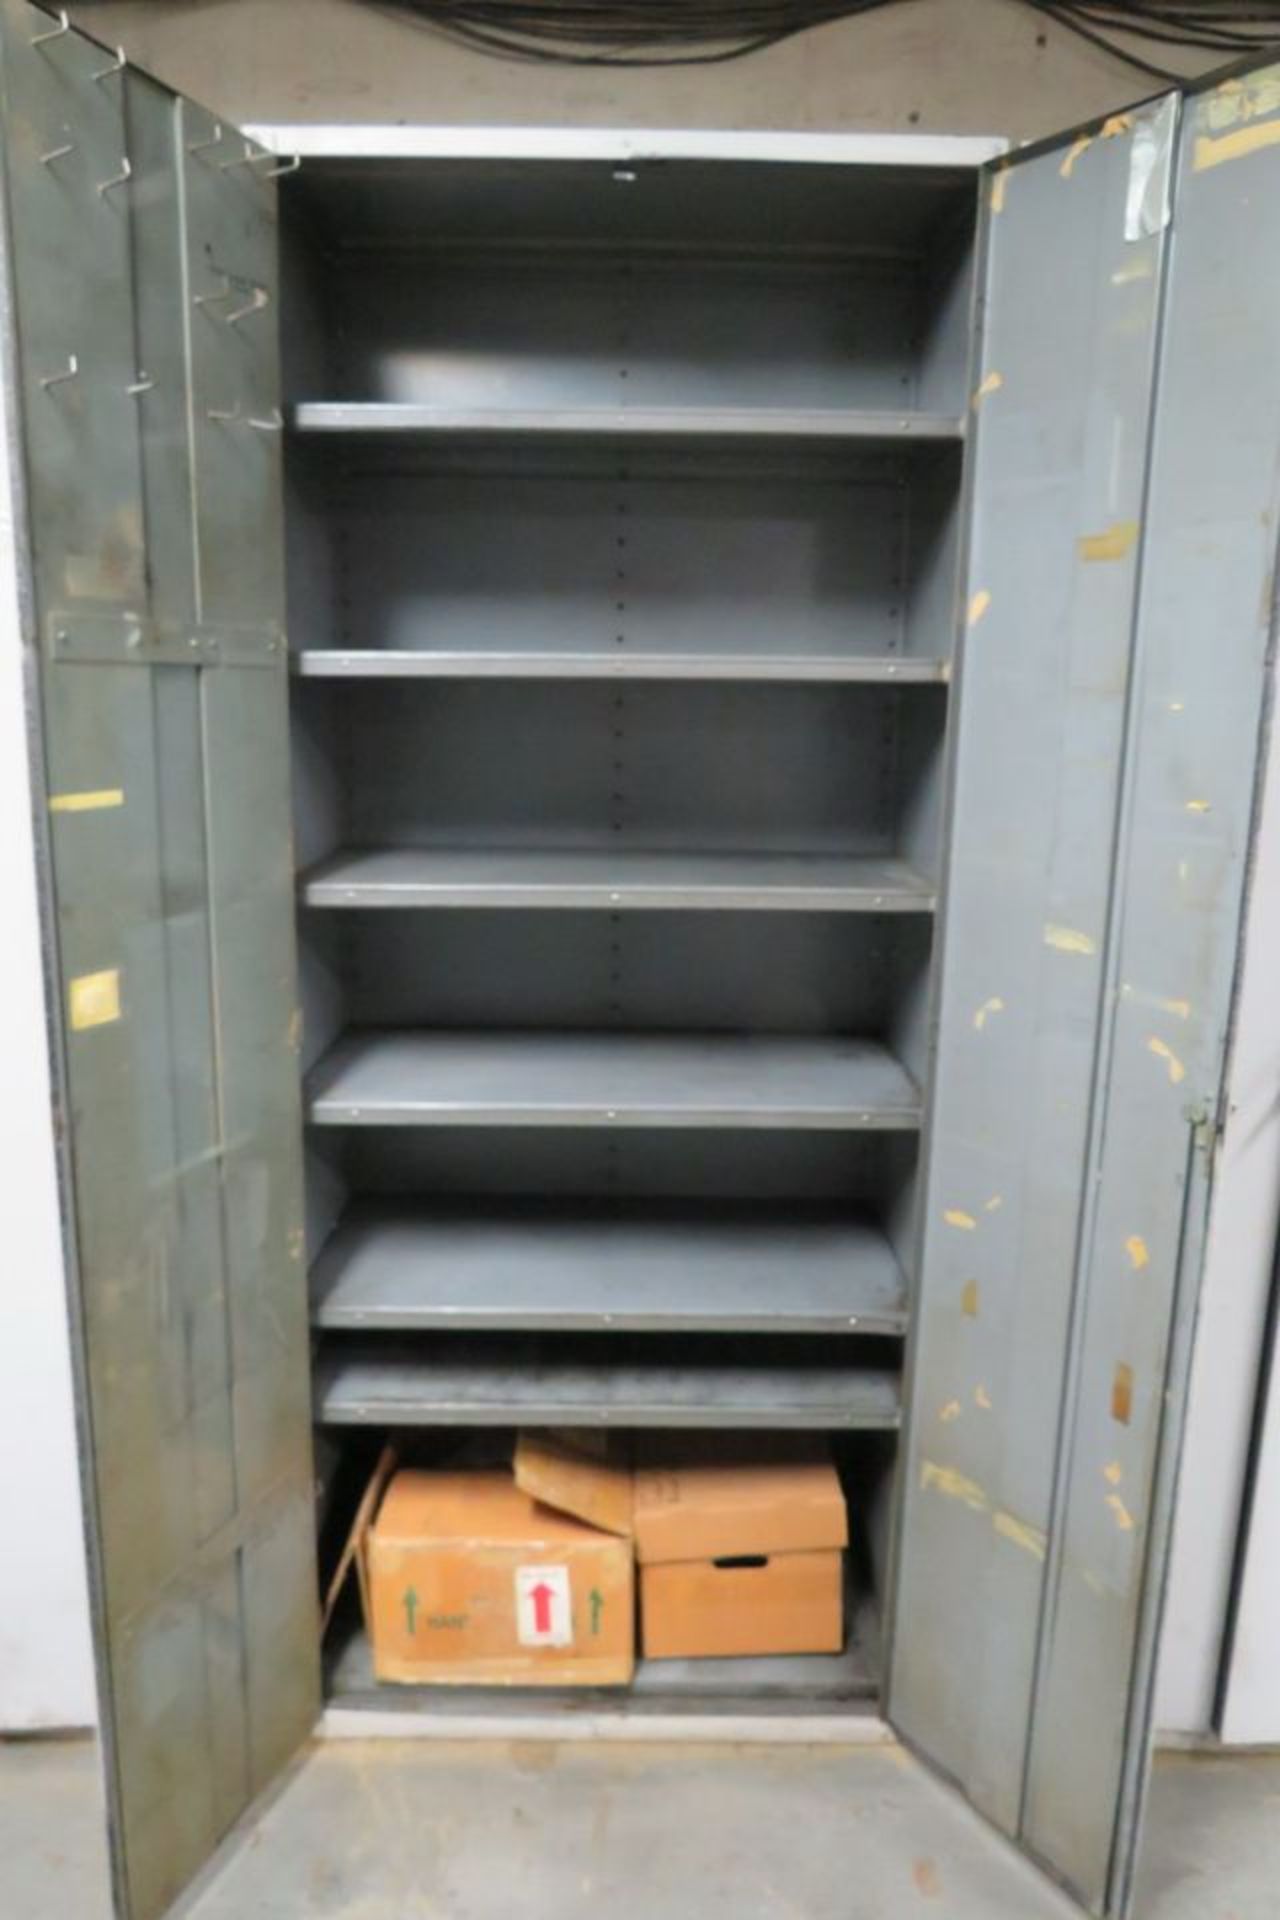 2-Door Metal Storage Cabinet, 36" X 20" X 87" (Basement CY-68 Cage 7) - Image 2 of 2